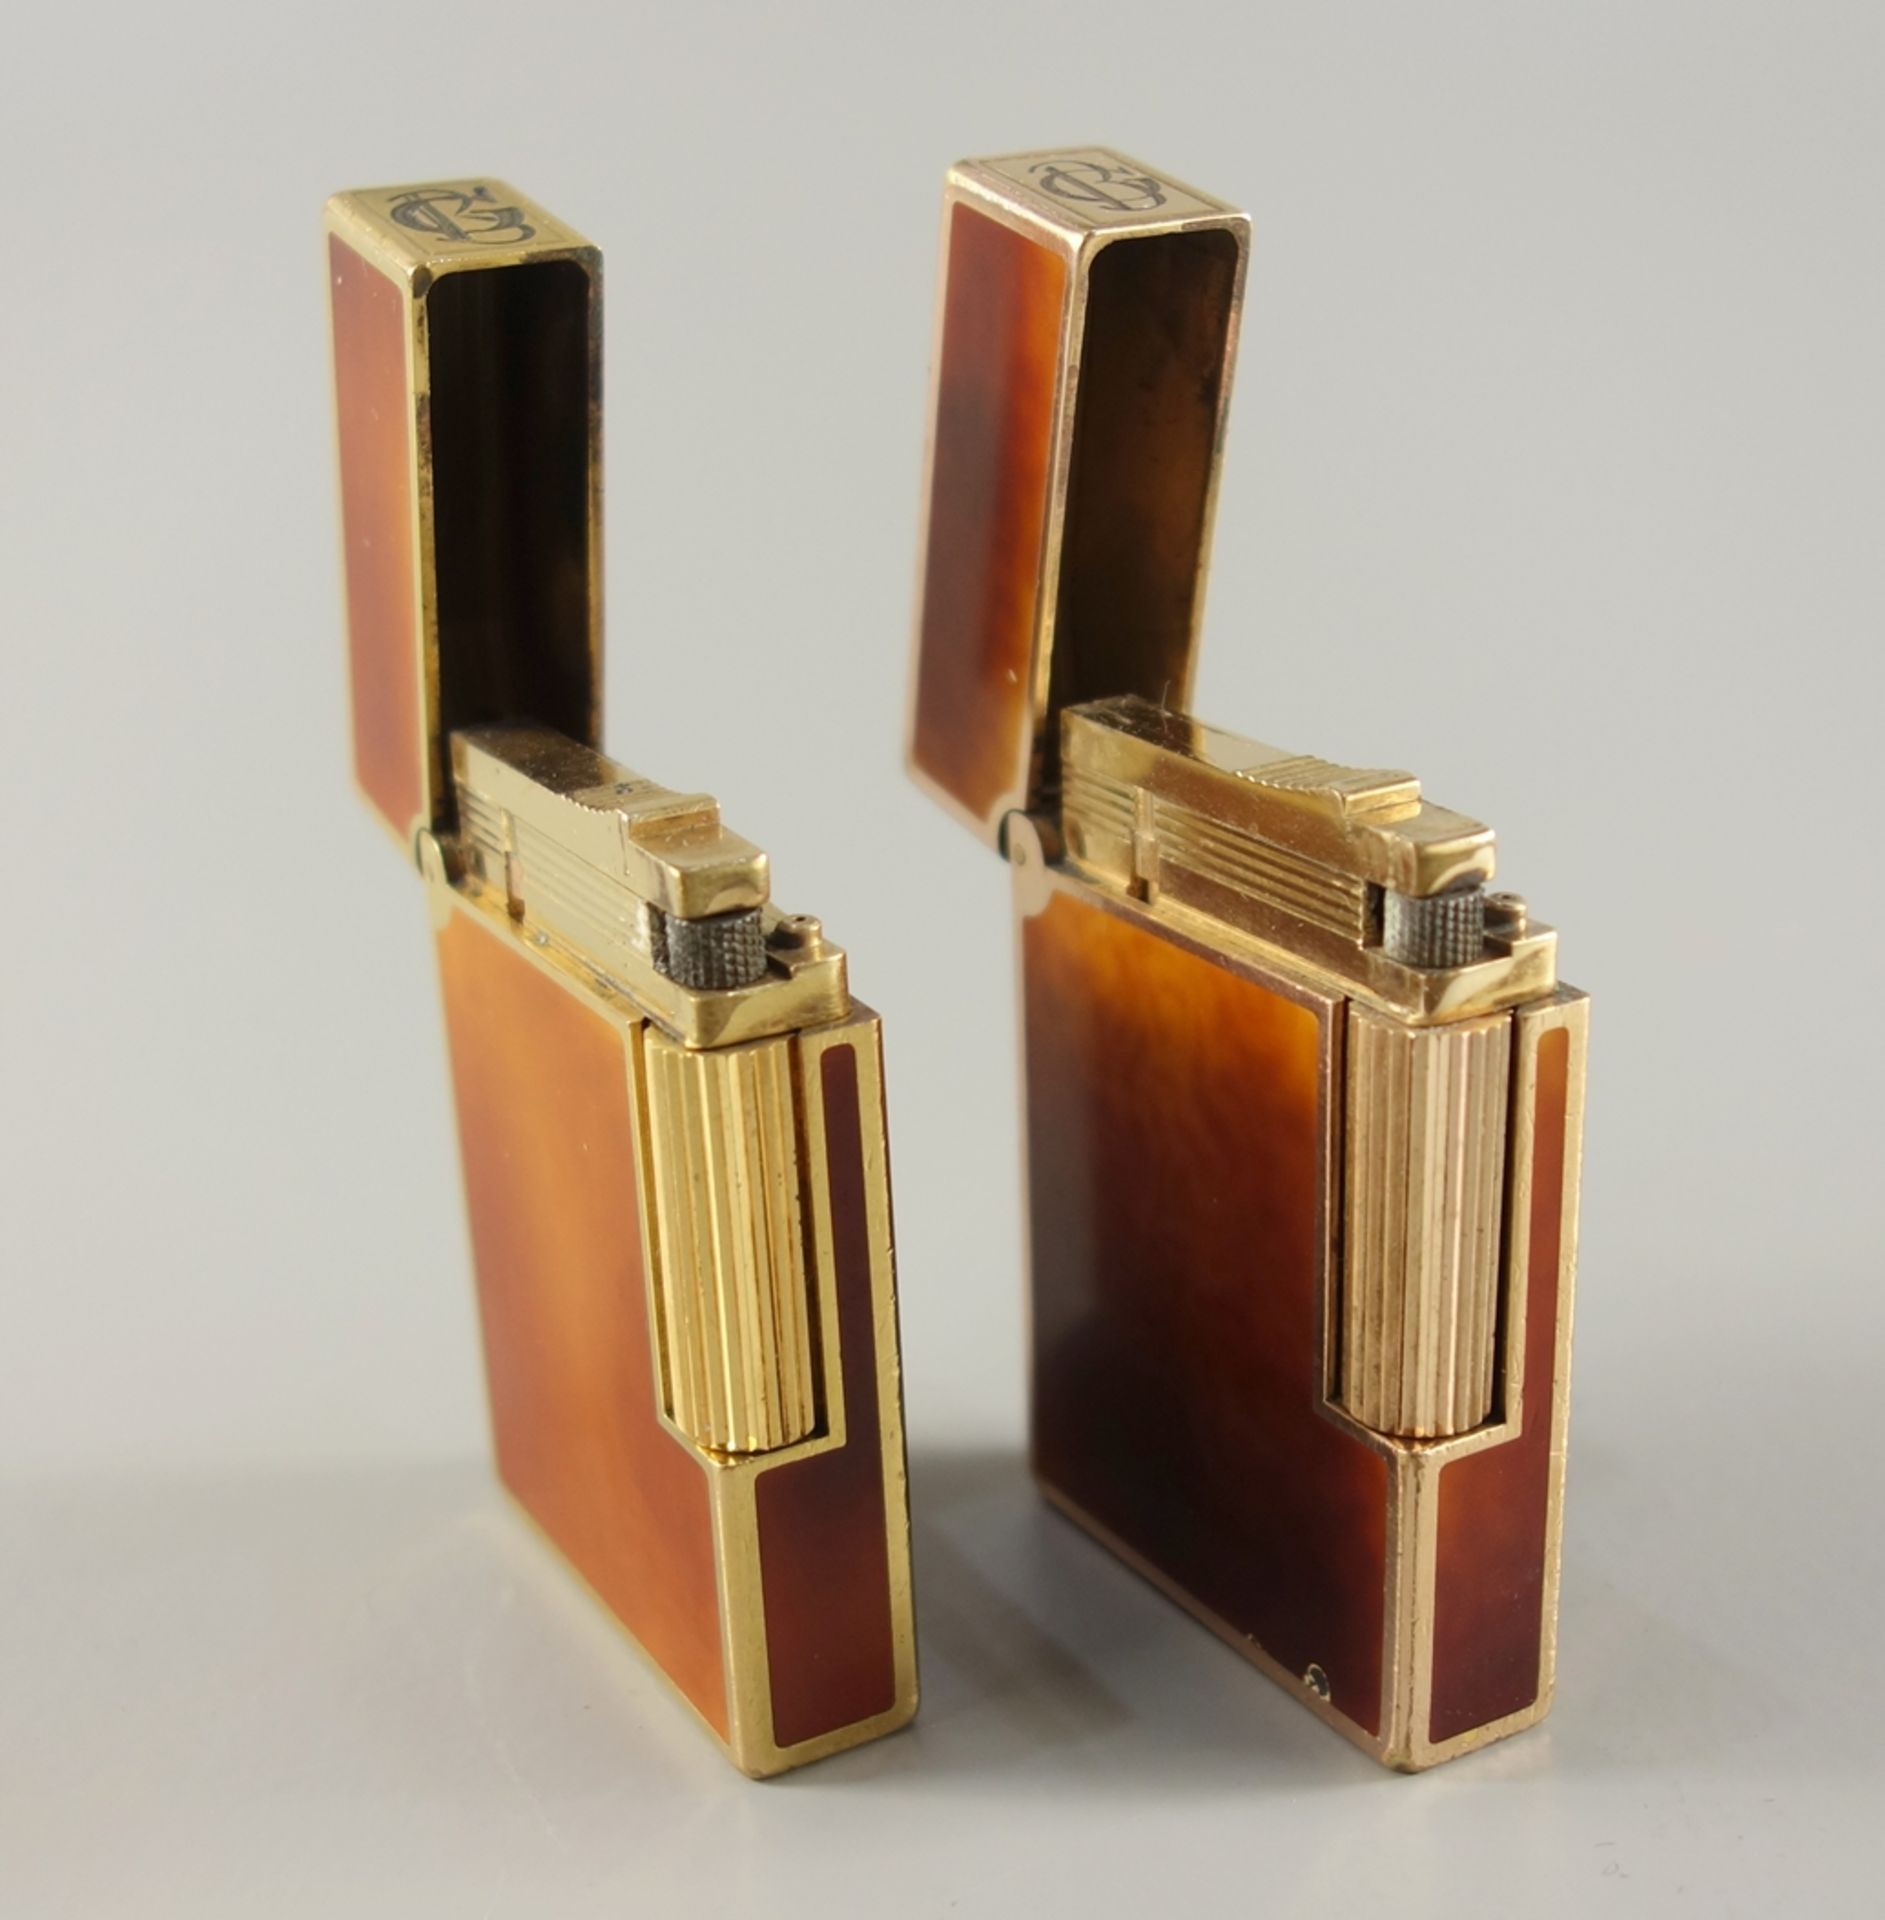 2 Feuerzeuge mit Monogramm, S.T. Dupont, Paris, vergoldet, mit Chinalack, monogrammiert "GB", - Bild 2 aus 6